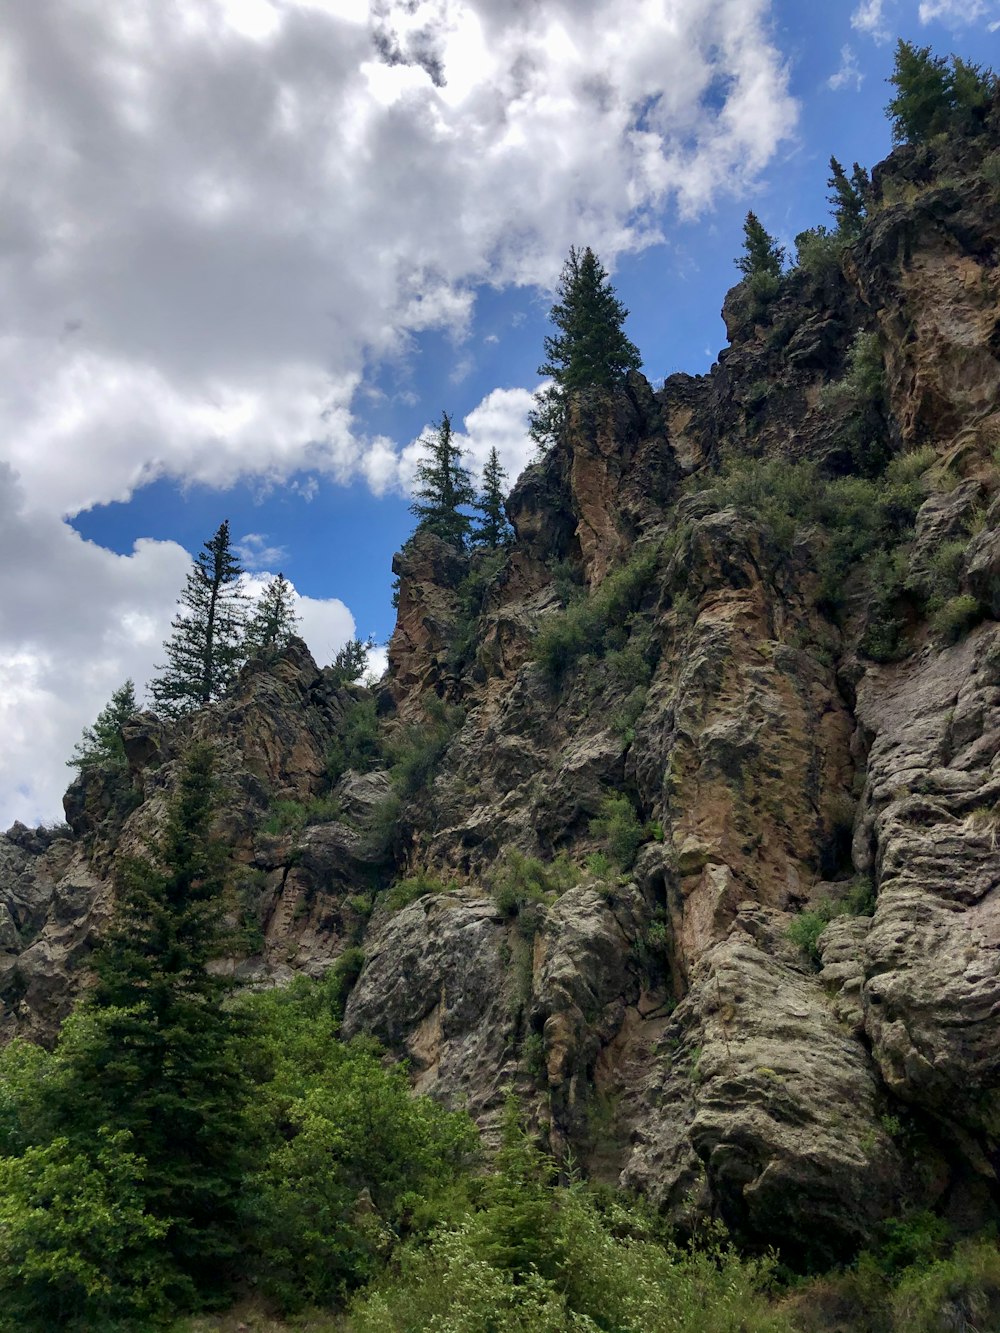 alberi verdi sulla montagna rocciosa marrone sotto il cielo nuvoloso blu e bianco durante il giorno